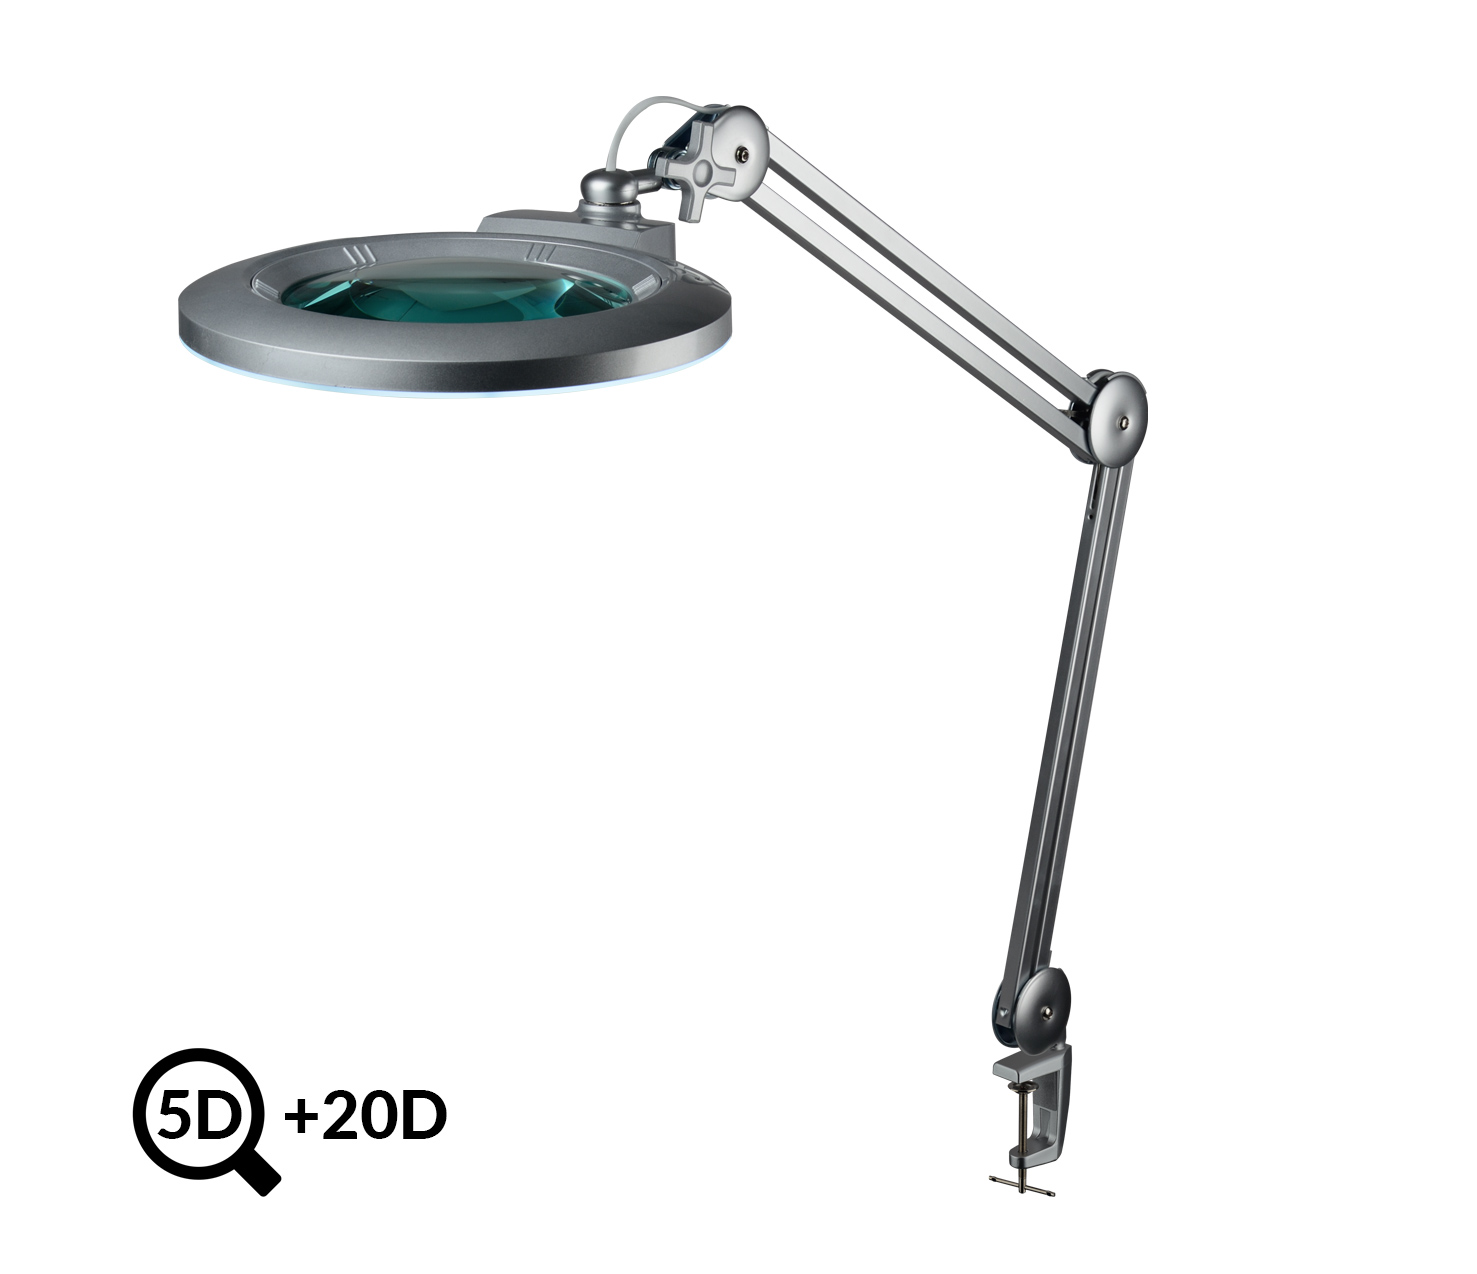 Šedá stolní lampa s lupou IB-178, průměr 178mm, 5D+20D